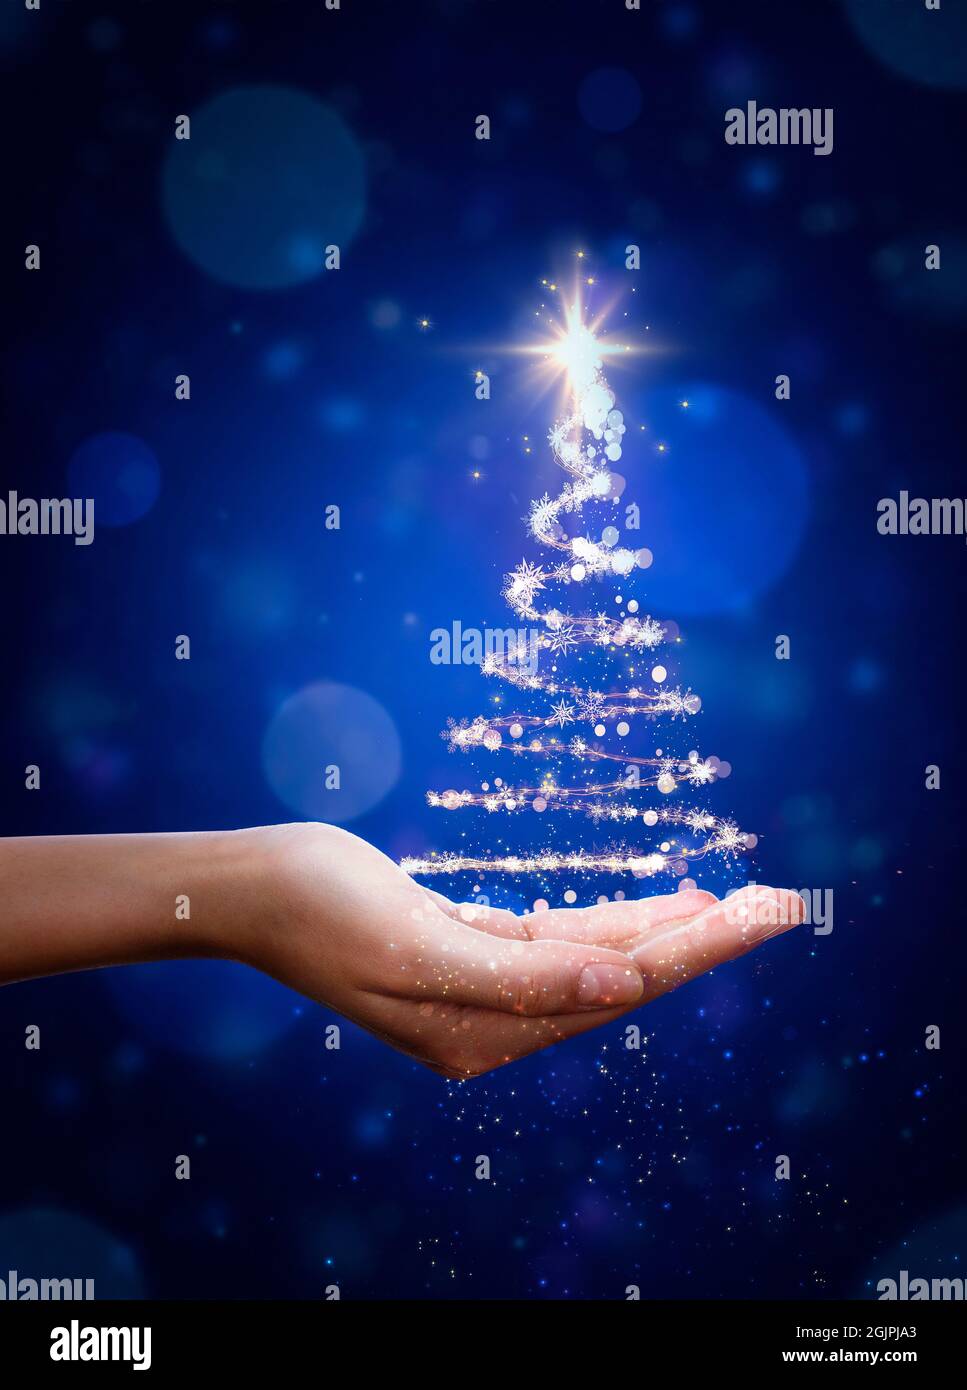 Arbre de Noël bleu à la main. Sapin de Noël, belles lumières, étoiles et flocons de neige Banque D'Images